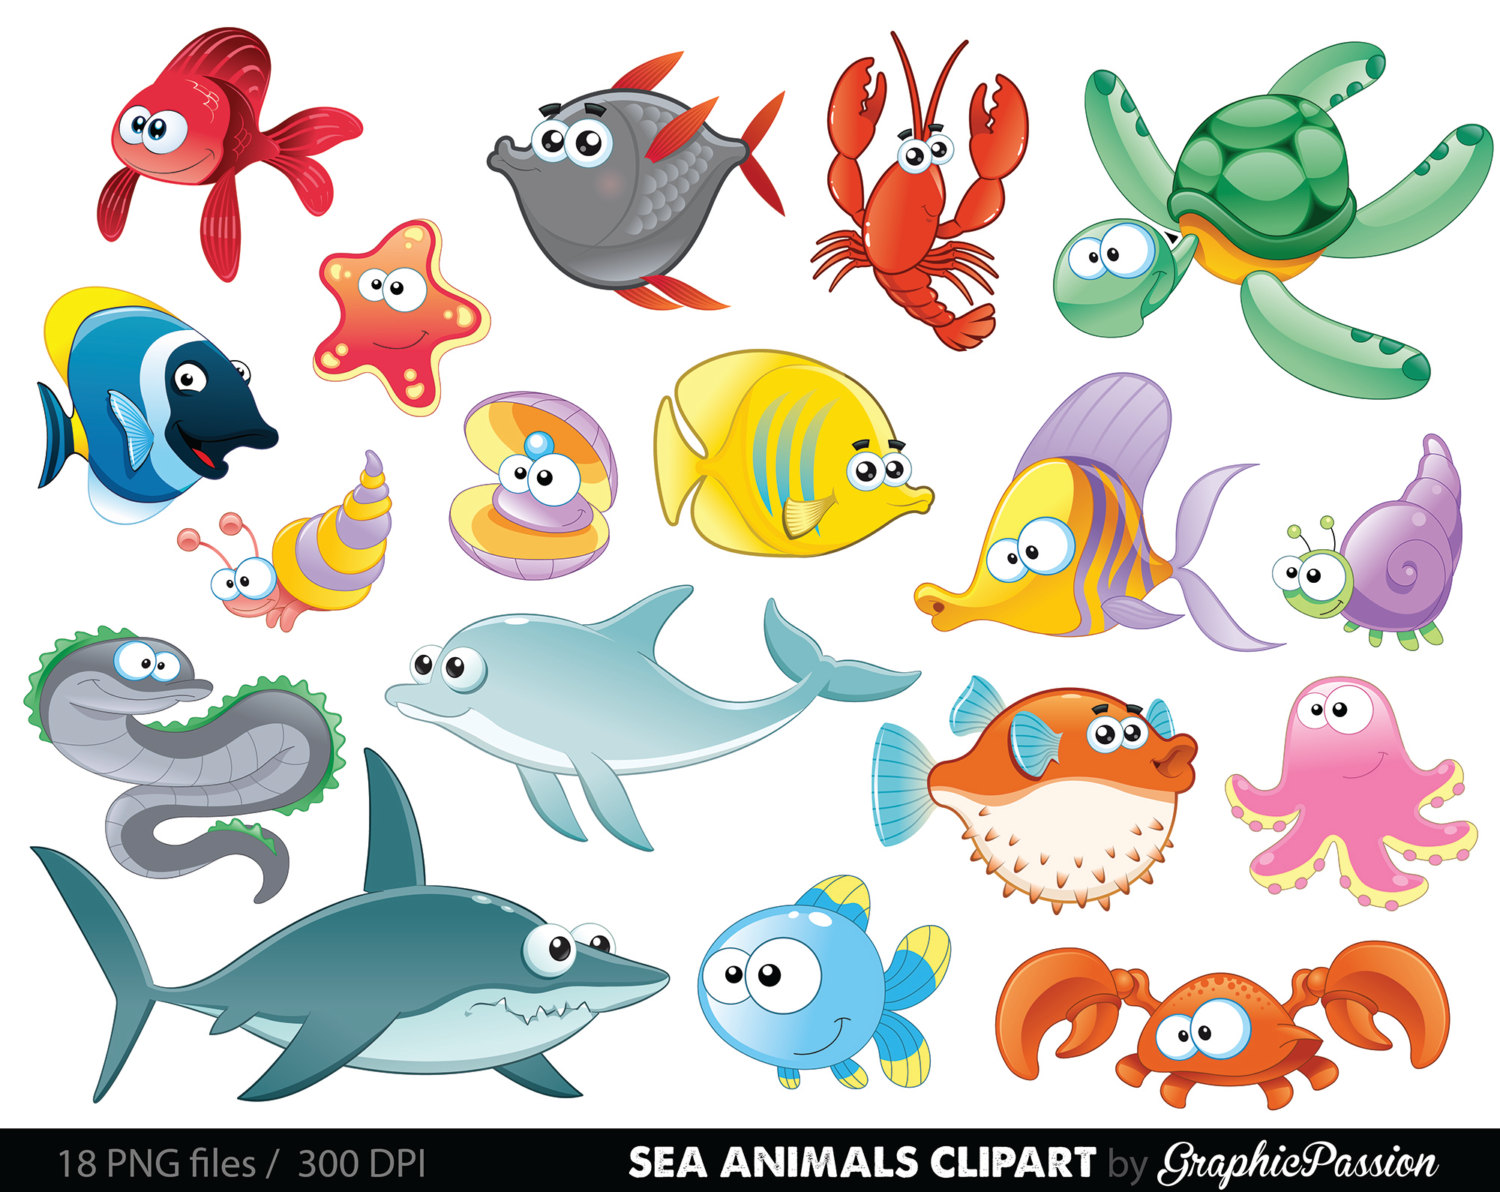 Underwater sea creatures .